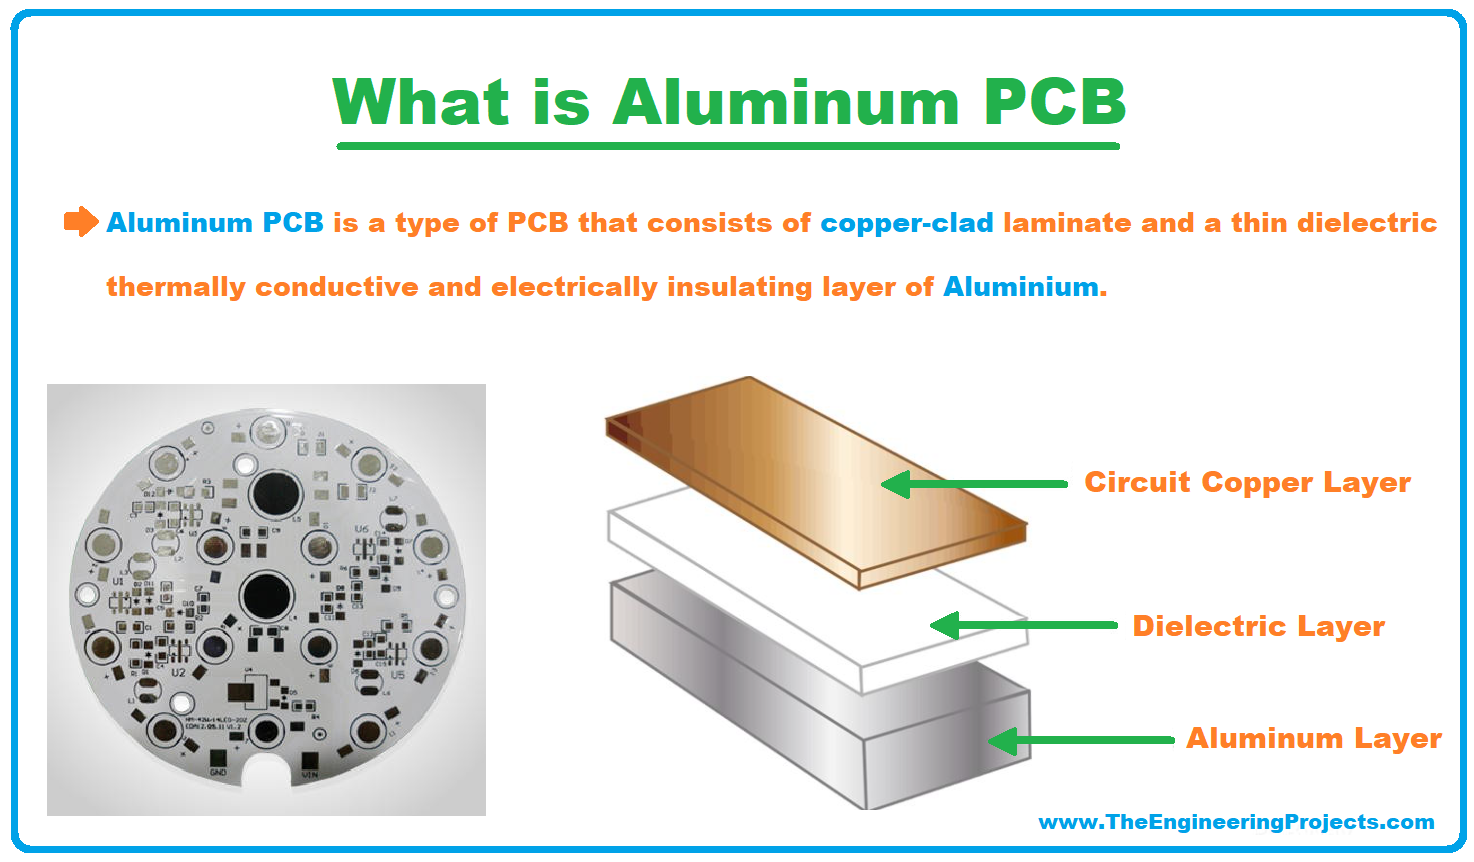 aluminum pcb, introduction to aluminum pcb, intro to aluminum pcb, applications of aluminum pcb, advantages of aluminum pcb, what is aluminum pcb